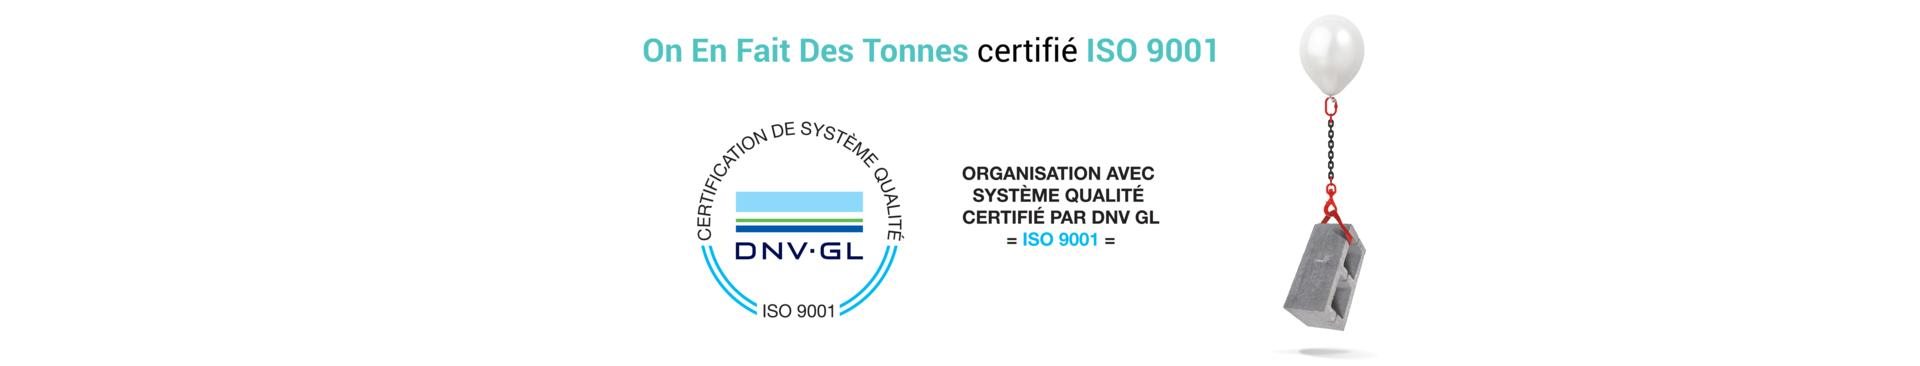 On en fait des tonnes obtient la certification ISO 9001